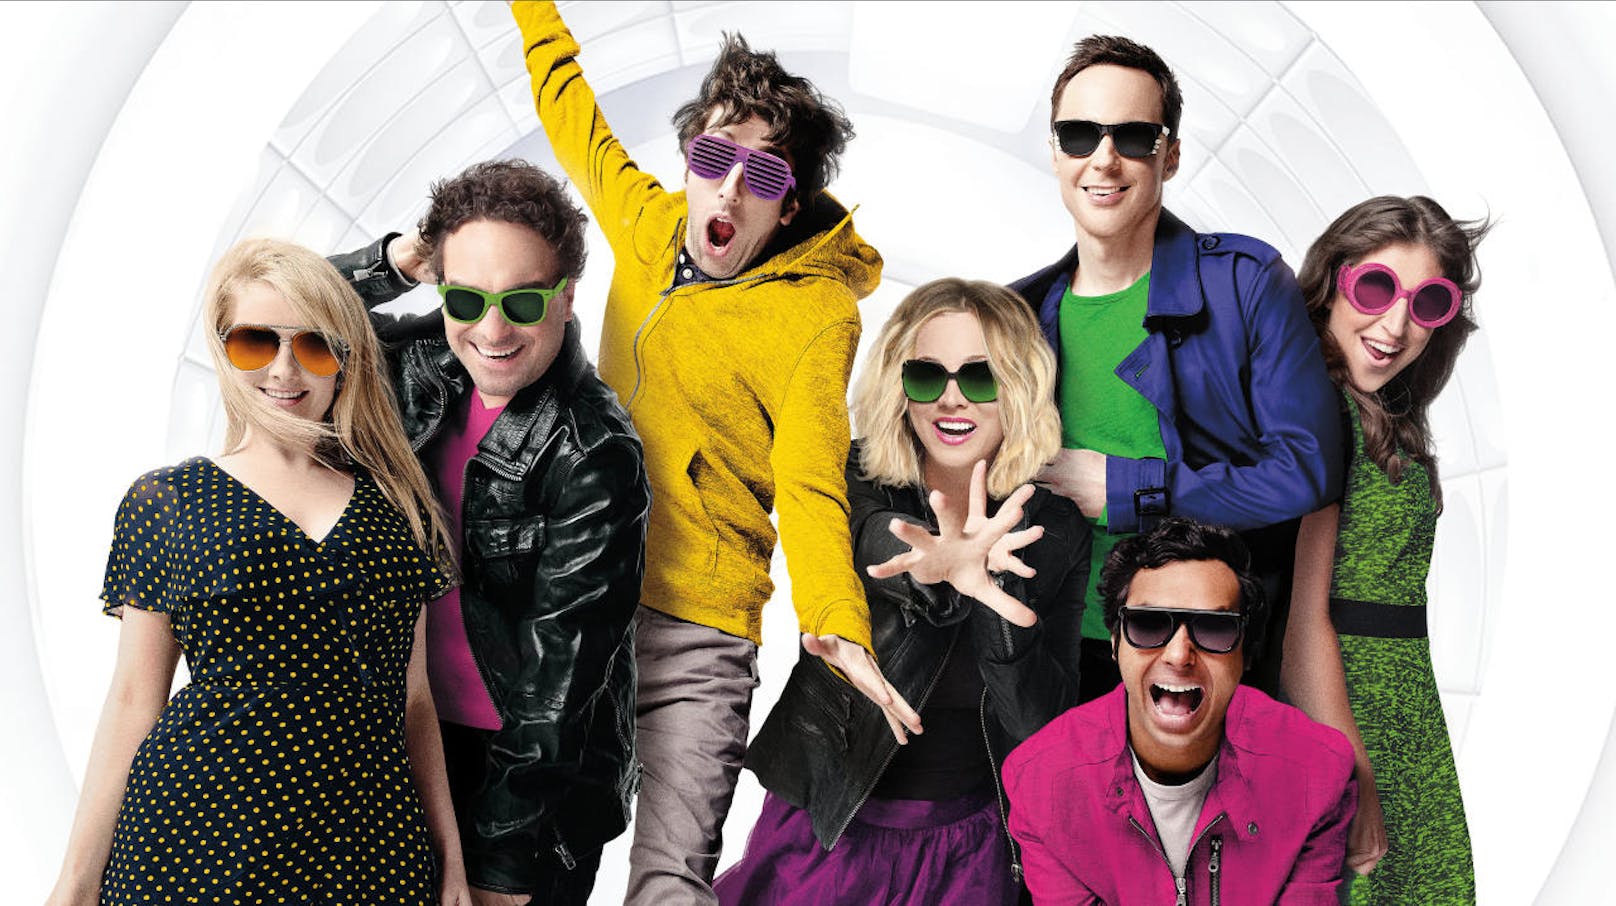 Platz 4: "The Big Bang Theory"